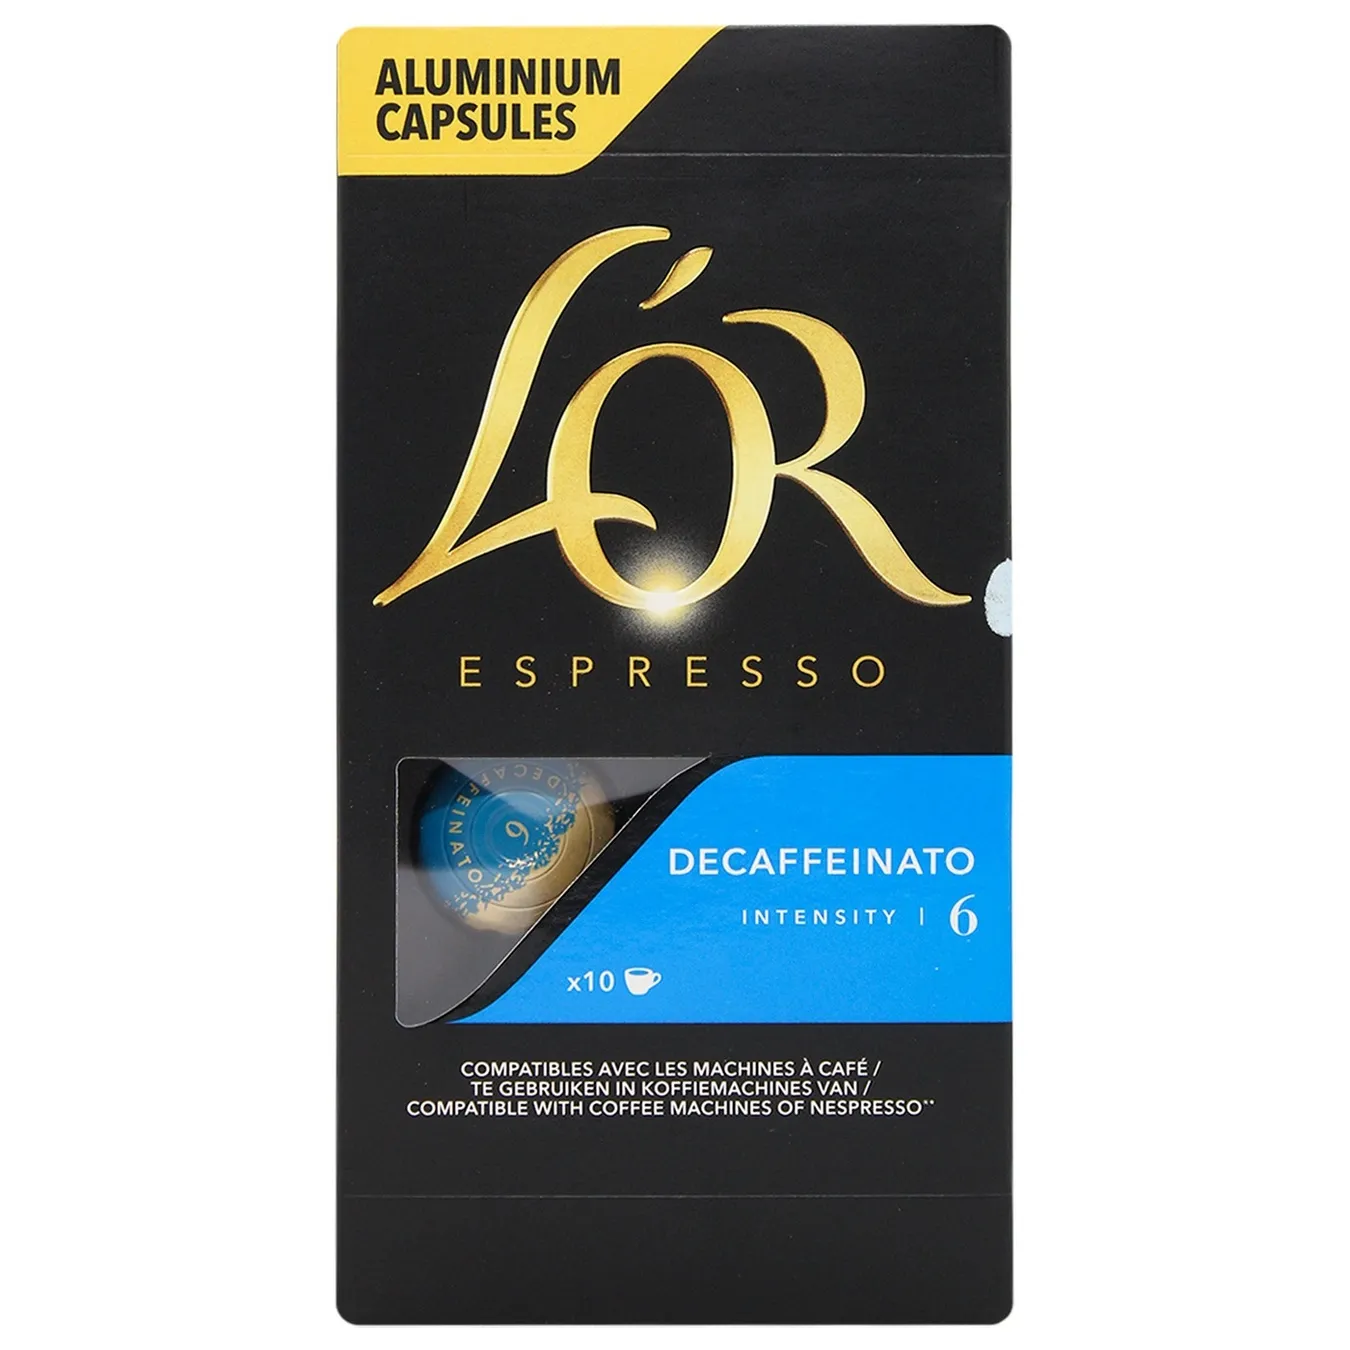 Coffee L'Or Espresso Decaffeinato capsule ground 10x5.2g